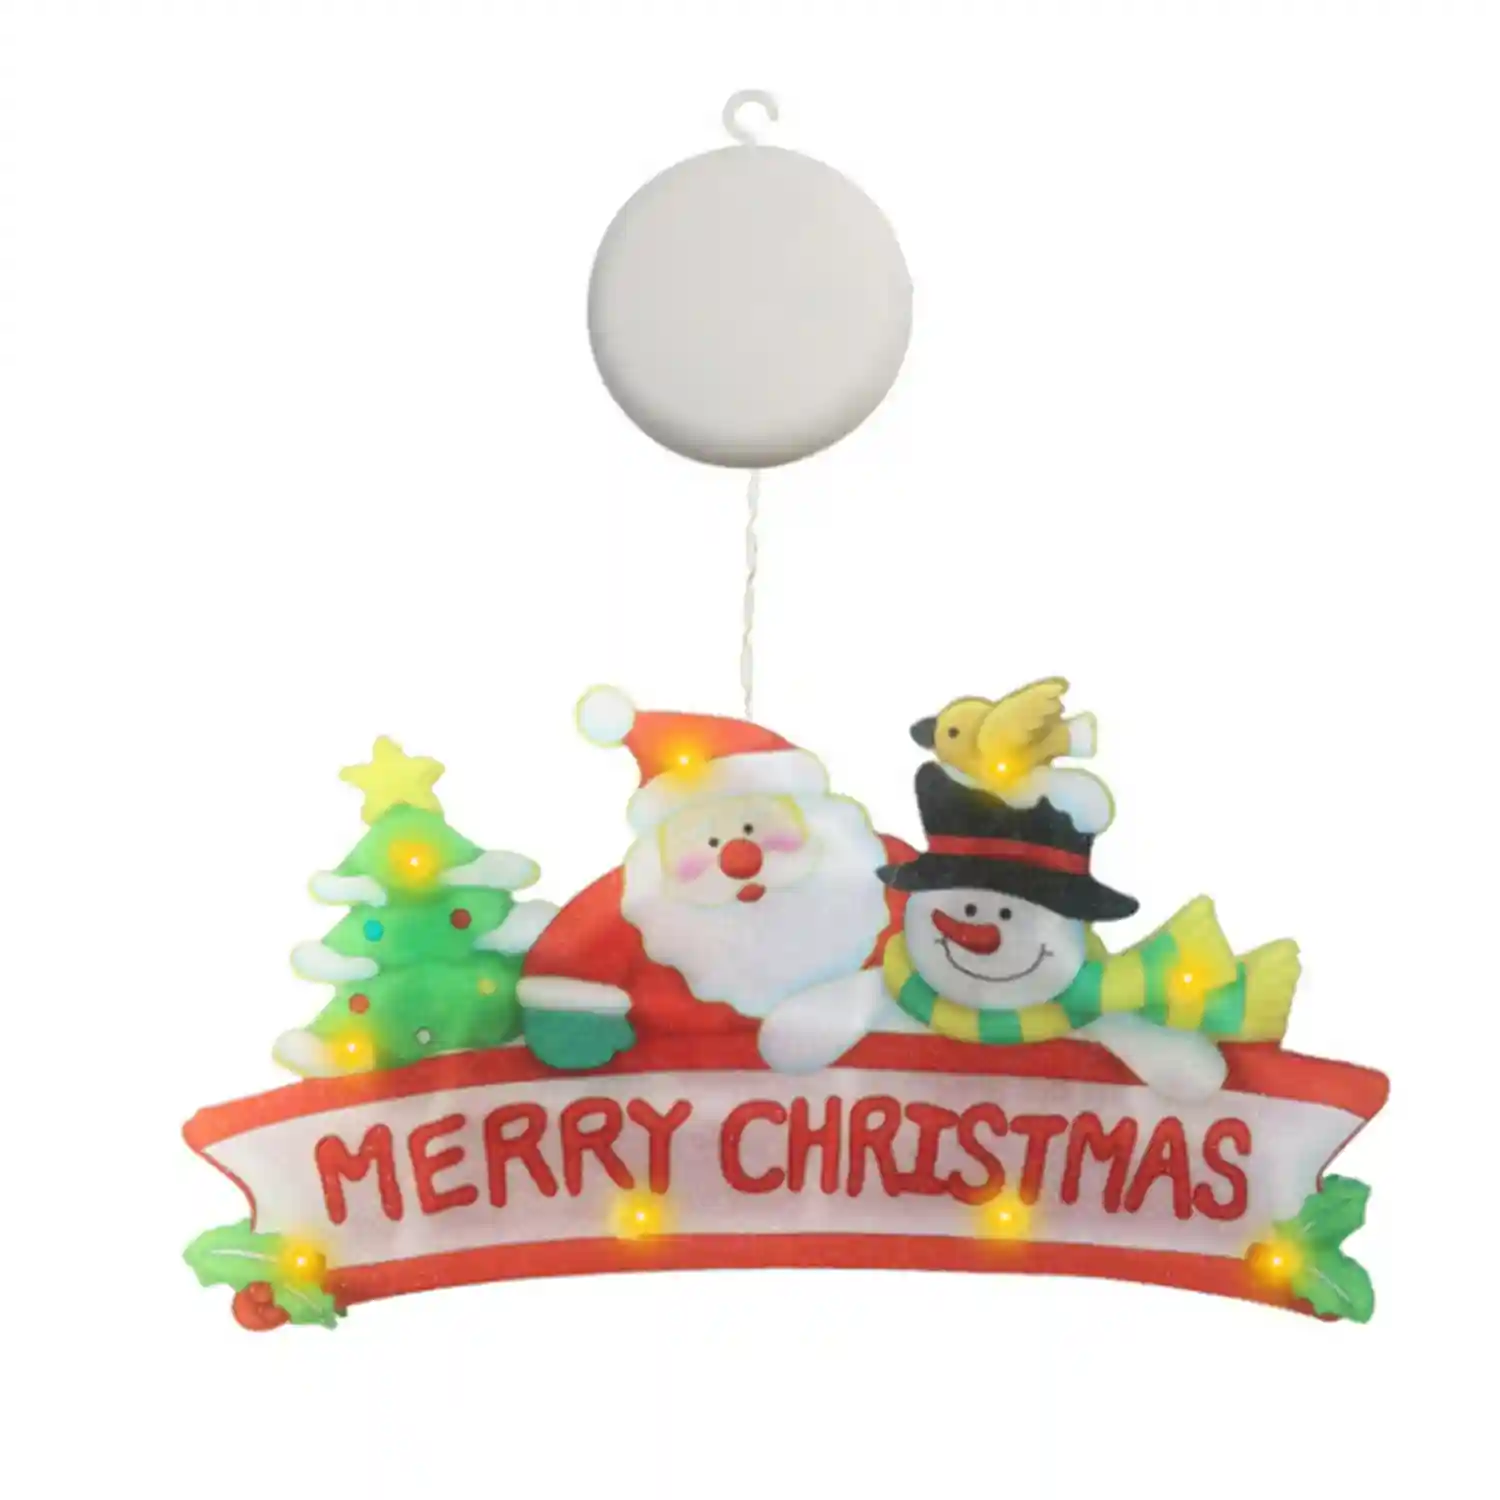 Decoración Christmas adhesiva cistal con luces LED santa Claus.